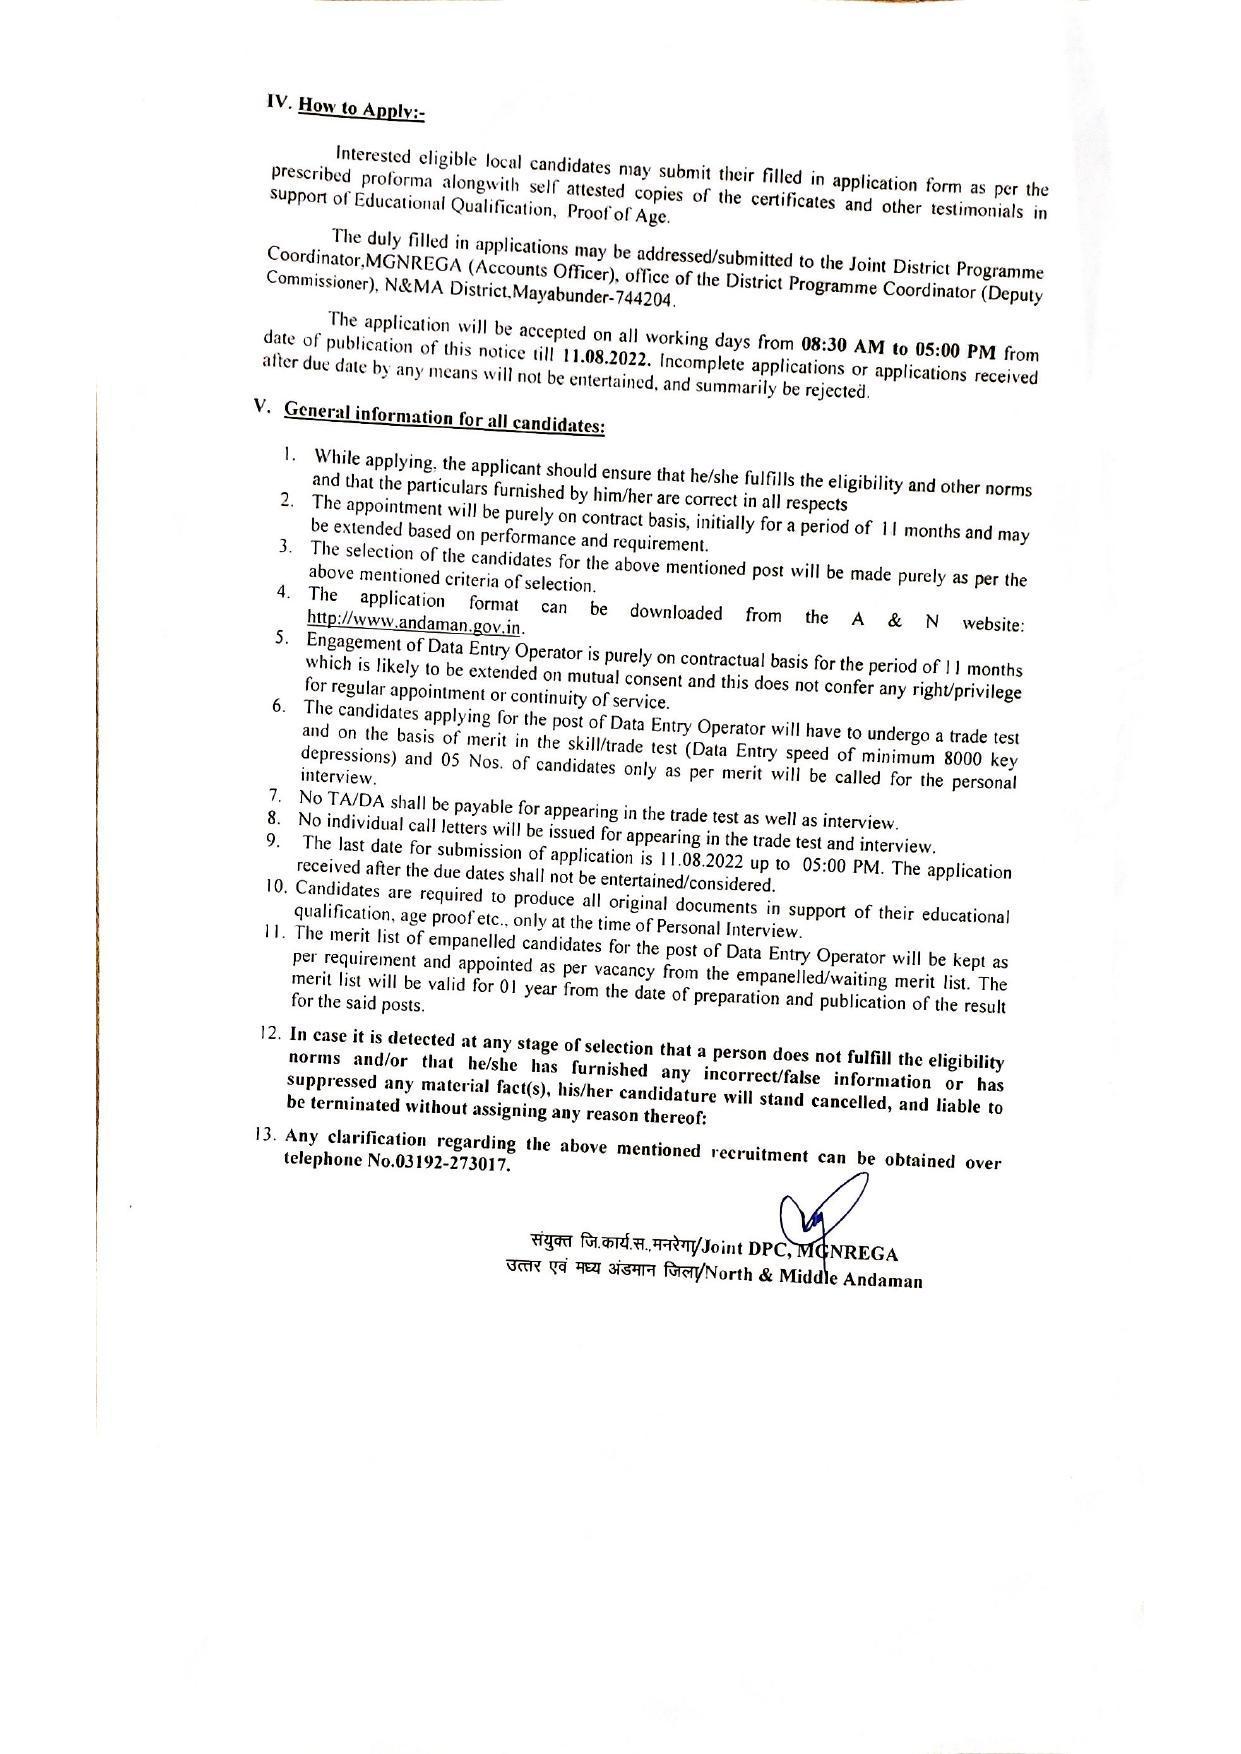 MGNREGA Invites Application for Data Entry Operator Recruitment 2022 - Page 1